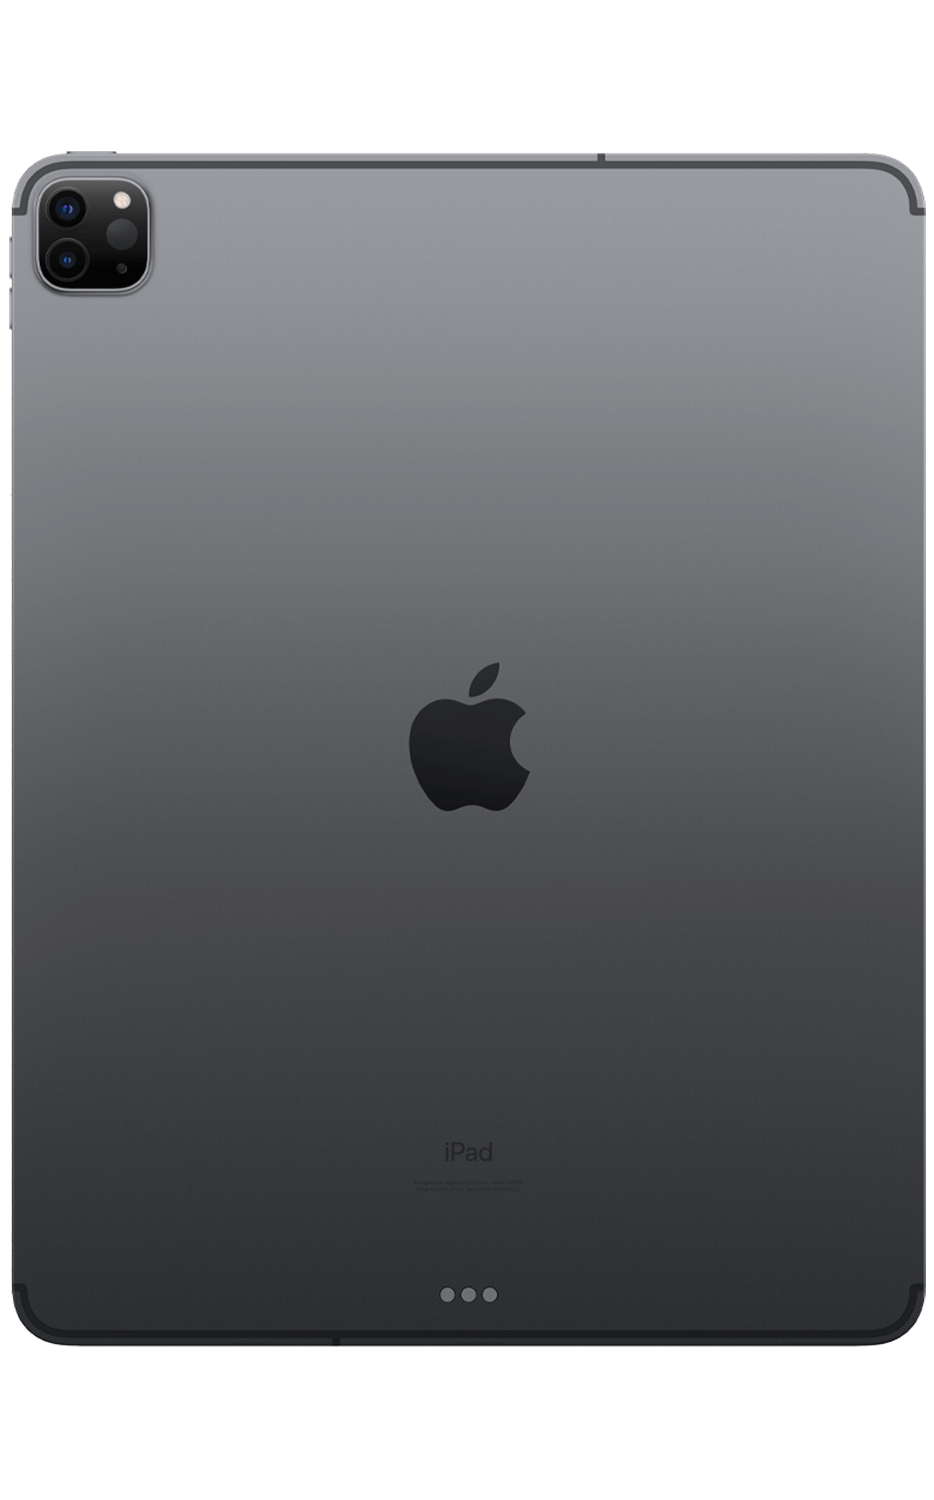 hinanden Selvrespekt Had iPad Pro 12.9 (4th Gen) Charging Port Repair in NYC